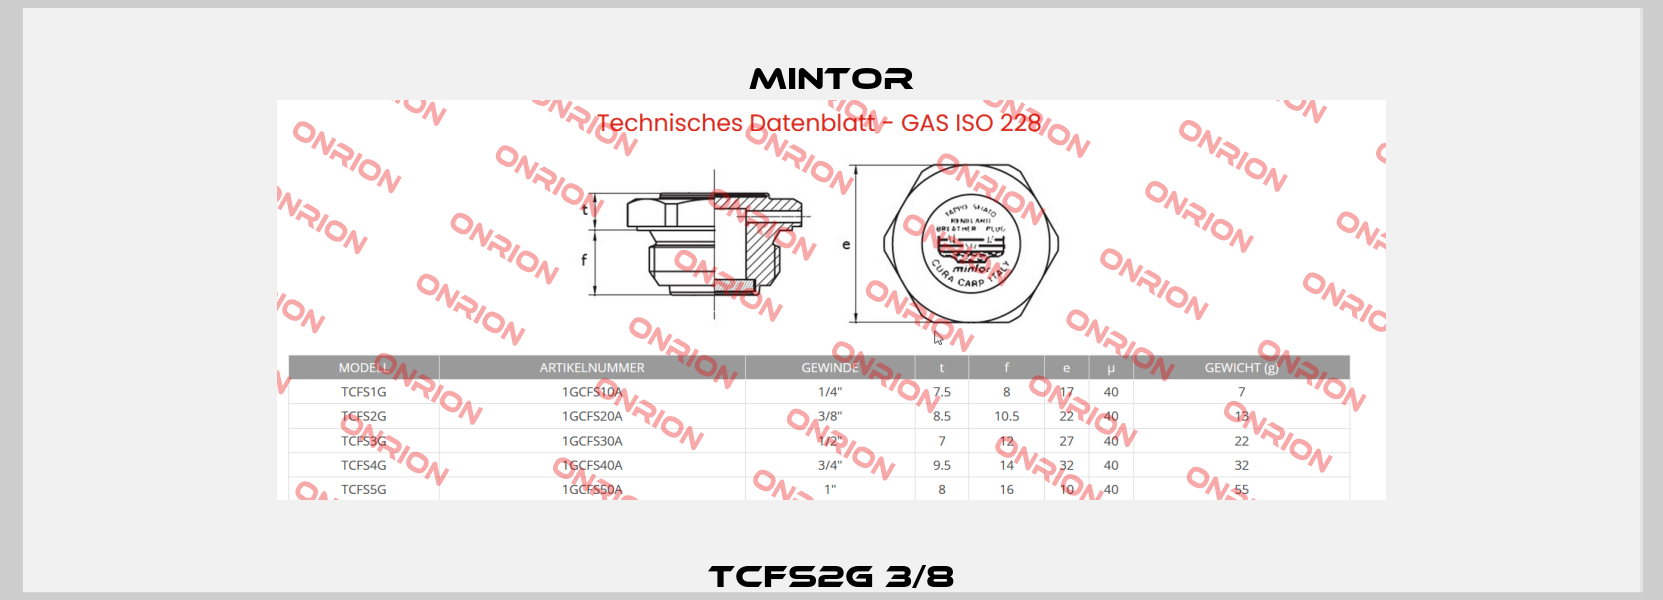 TCFS2G 3/8 Mintor